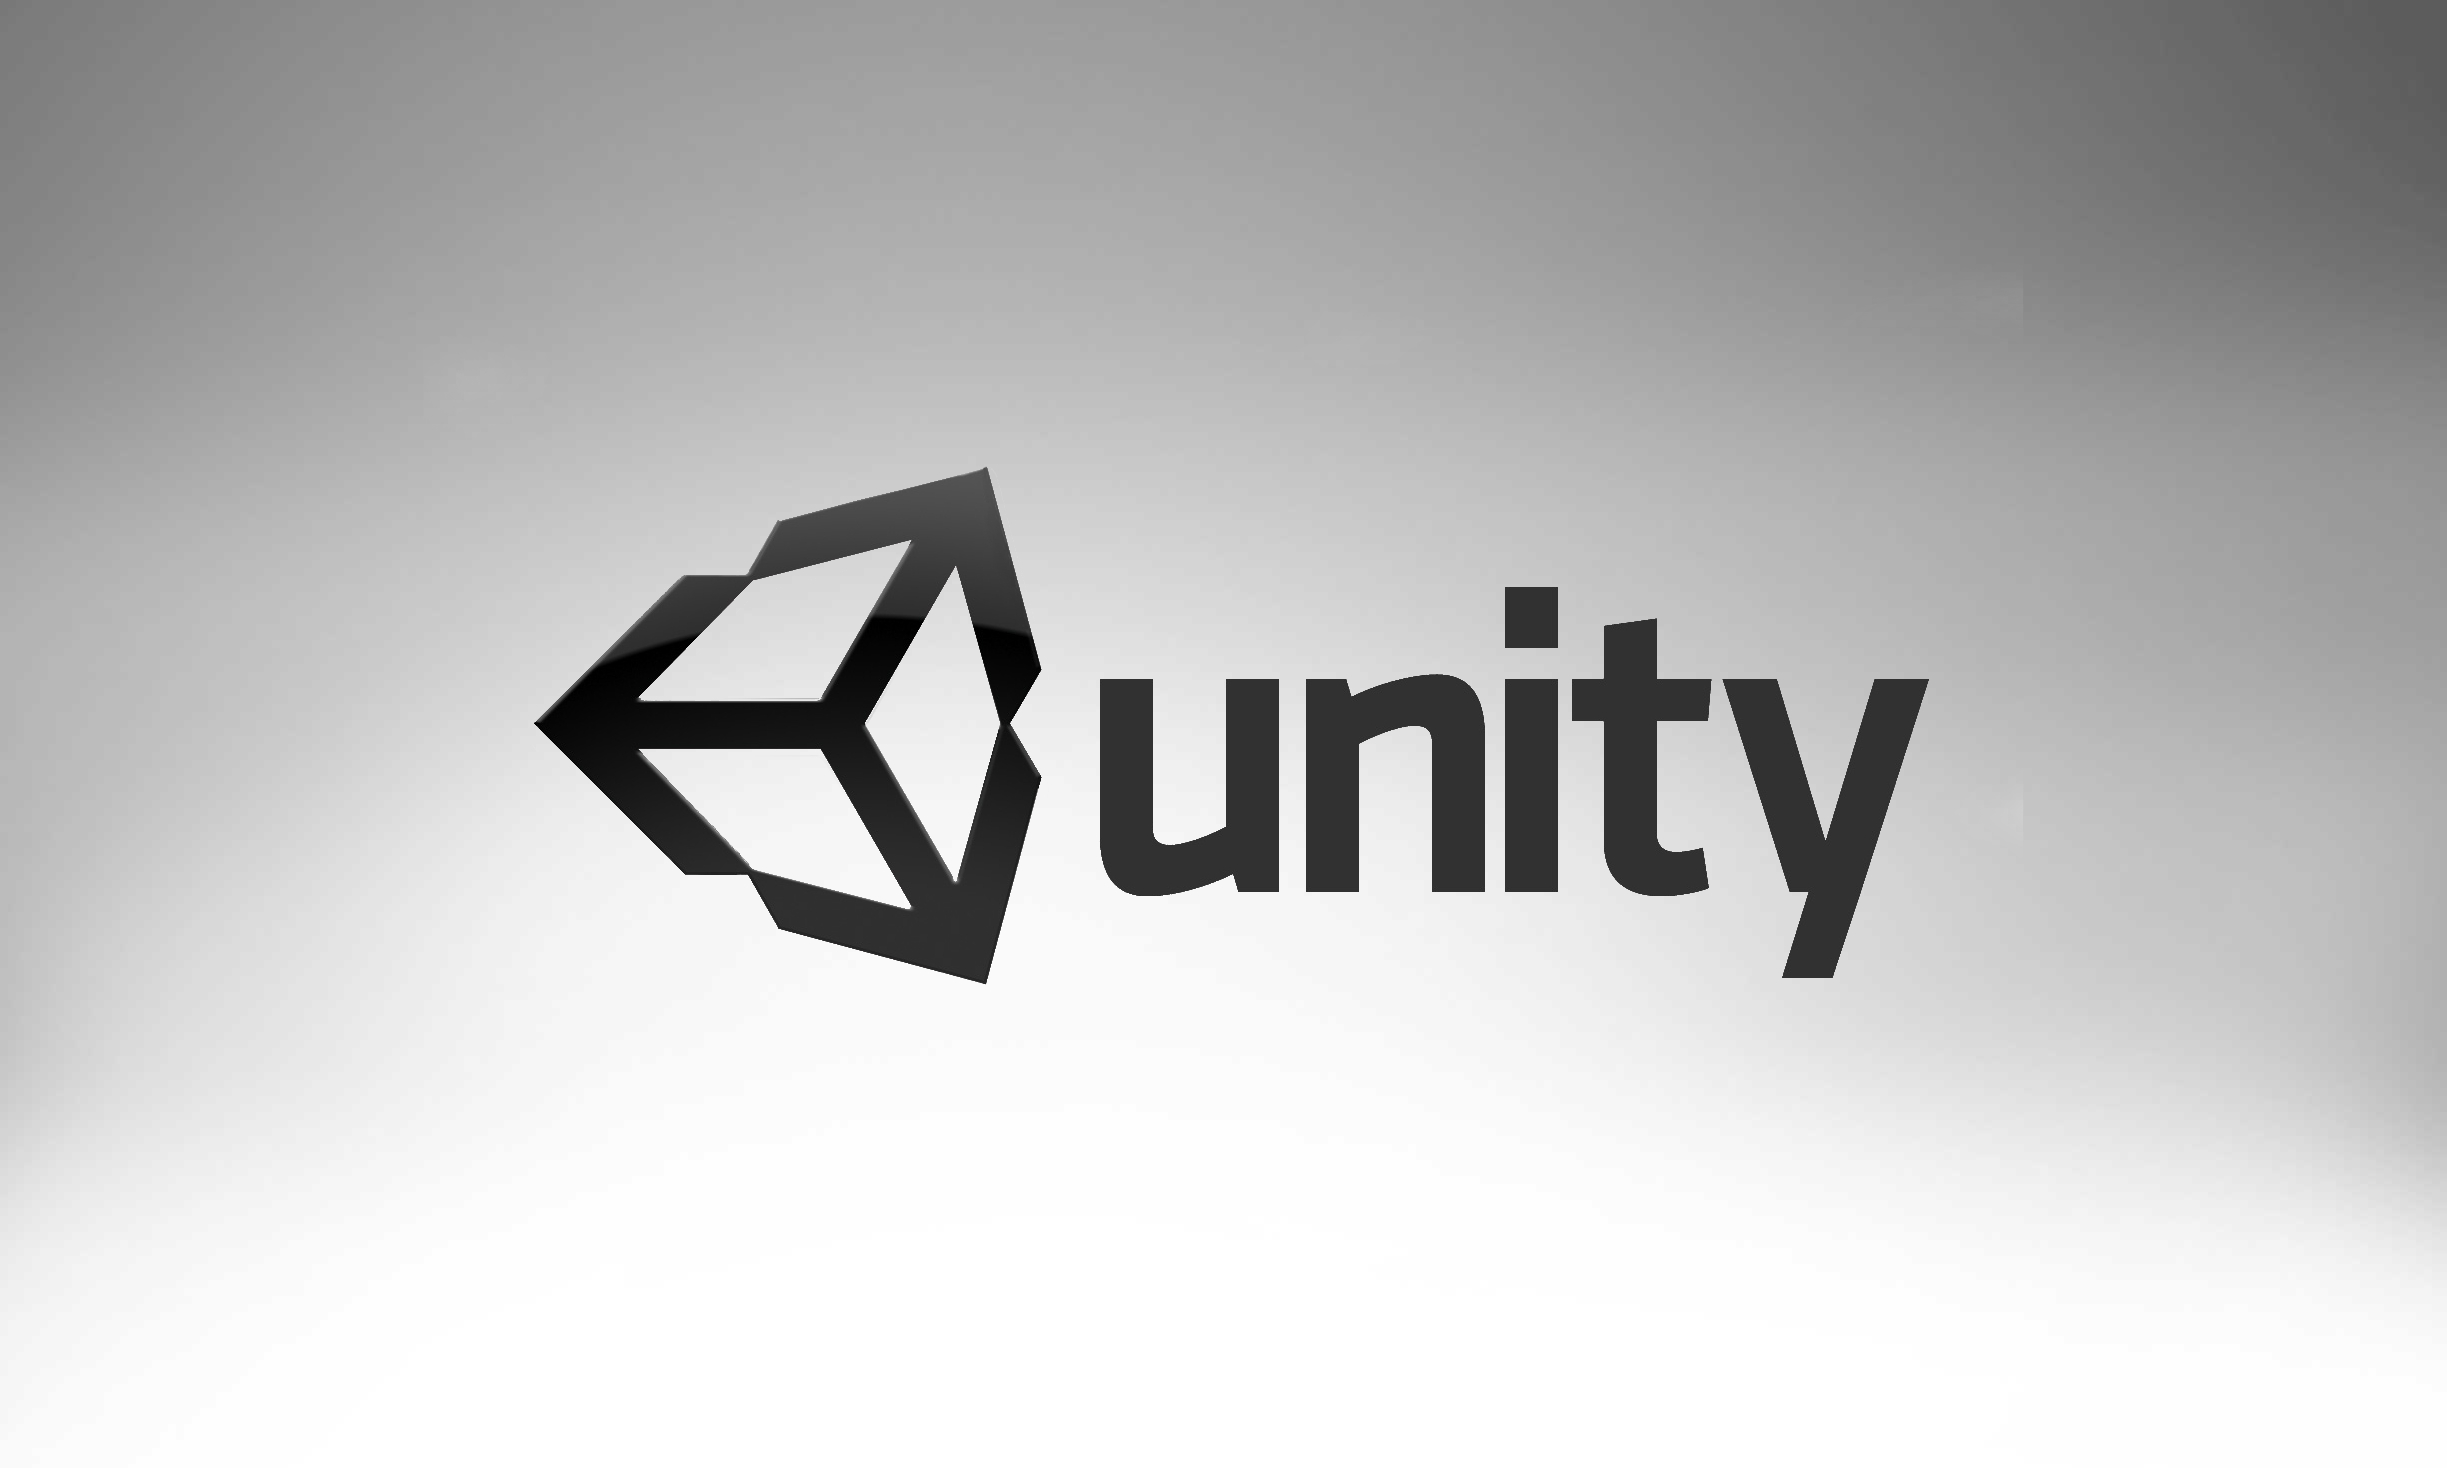 Hình nền Unity: Cho dù bạn là một designer hay đơn giản chỉ là một người thích sáng tạo và đam mê đồ họa, hãy xem các hình nền Unity để tìm cảm hứng và ý tưởng mới. Những hình ảnh này sẽ cho bạn cảm giác tràn đầy năng lượng và sáng tạo khi bạn bắt đầu làm việc trên máy tính.